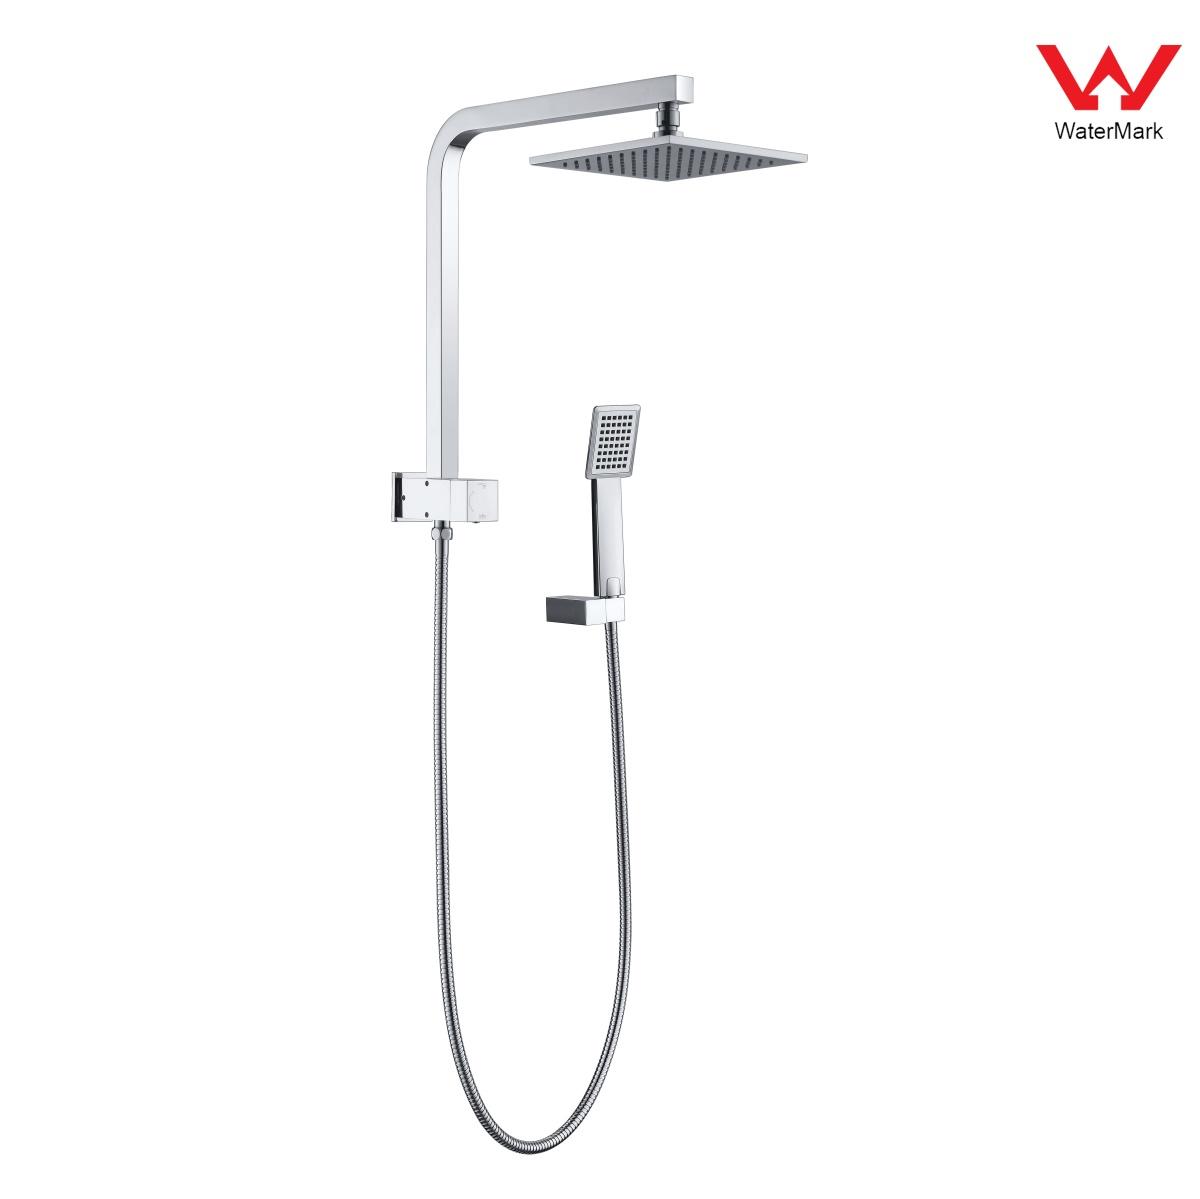 DA610032CP Watermark tanúsítvánnyal rendelkező zuhanykészletek, esőzuhany-készlet, tolózuhany-készlet;